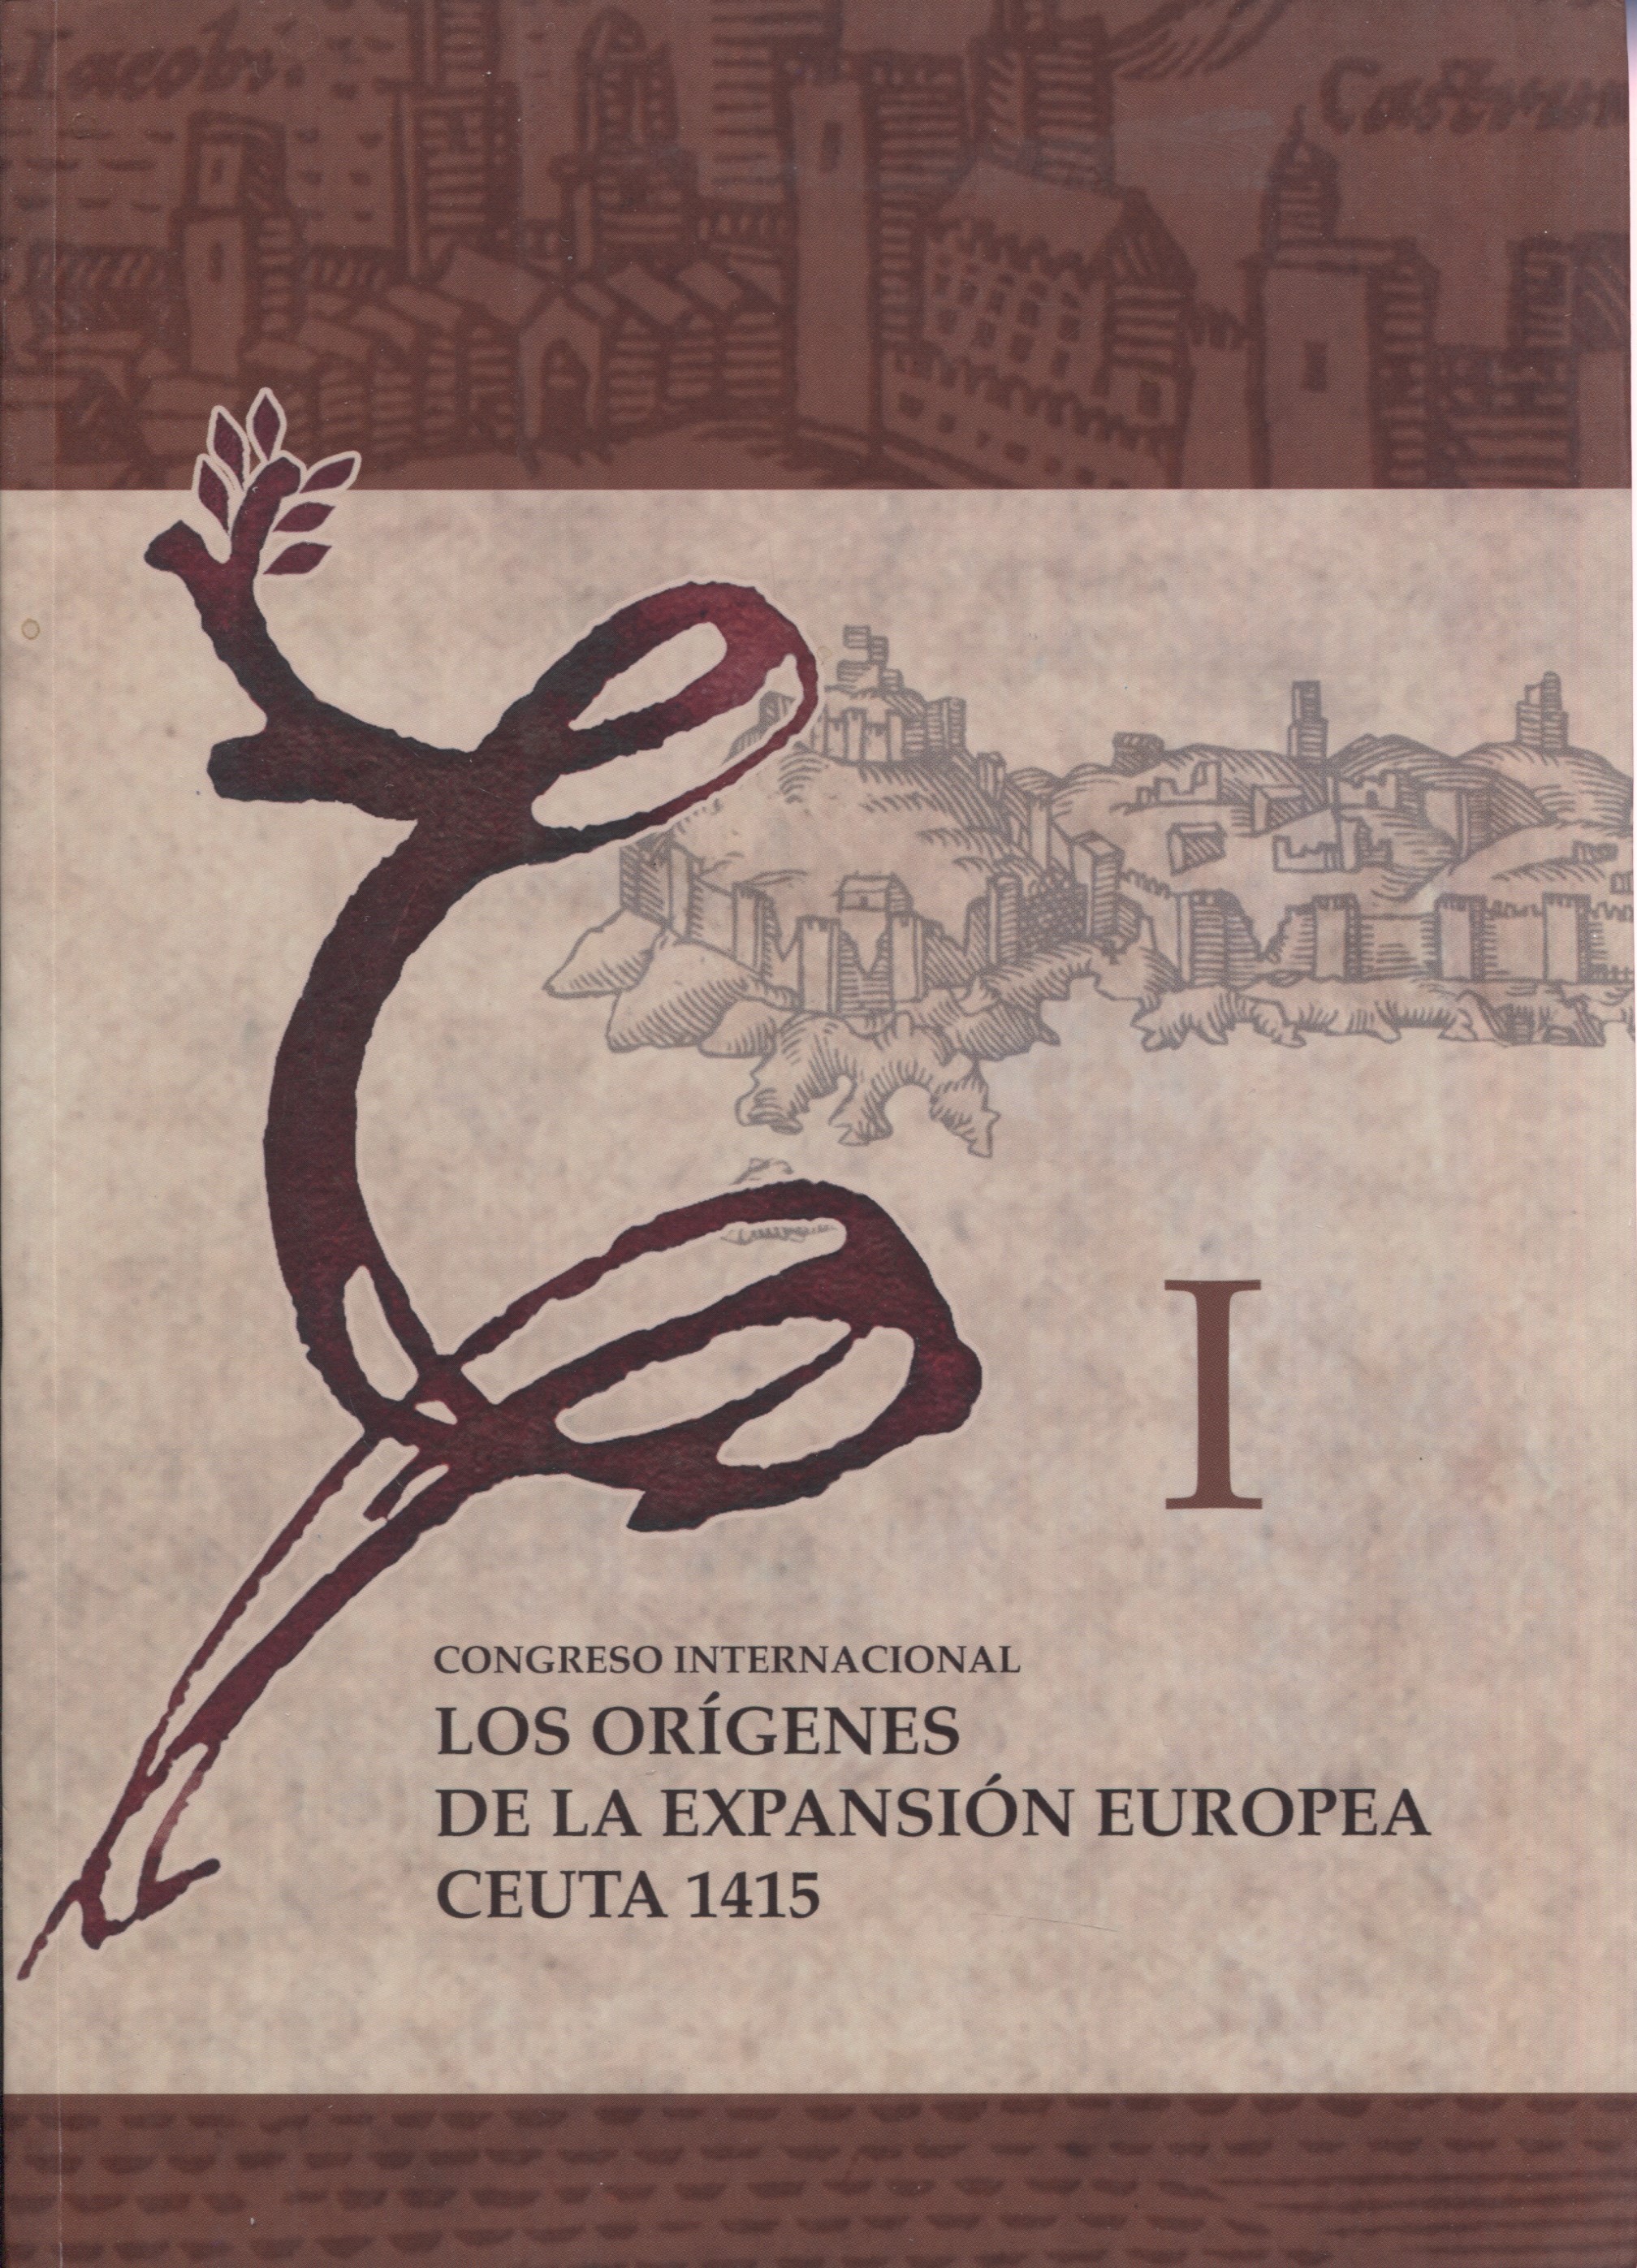 Los orígenes de la expansión europea. Ceuta 1415